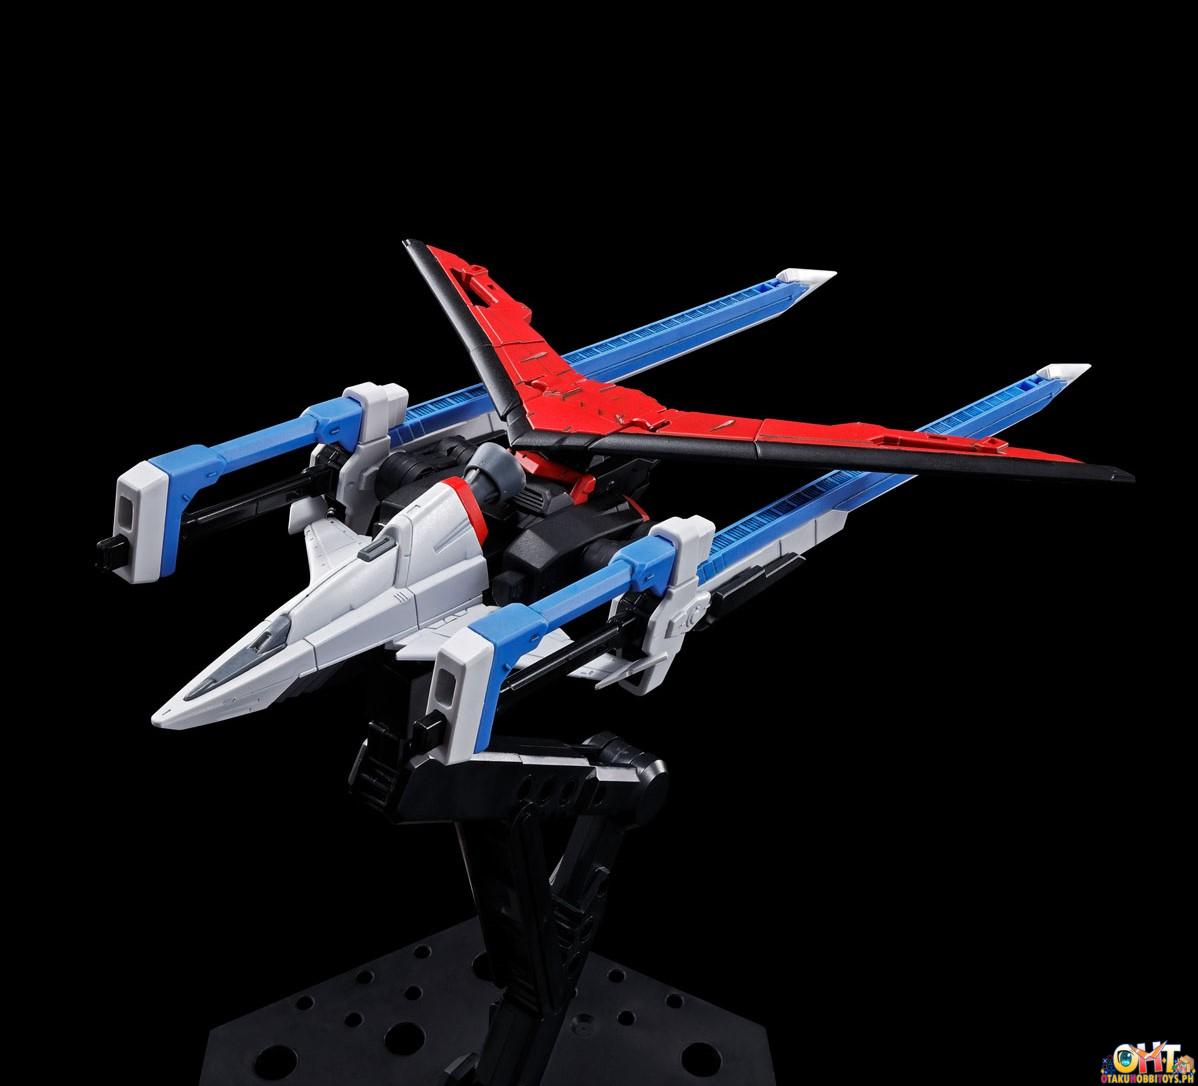 Bandai RG 1/144 Sword Impulse Gundam